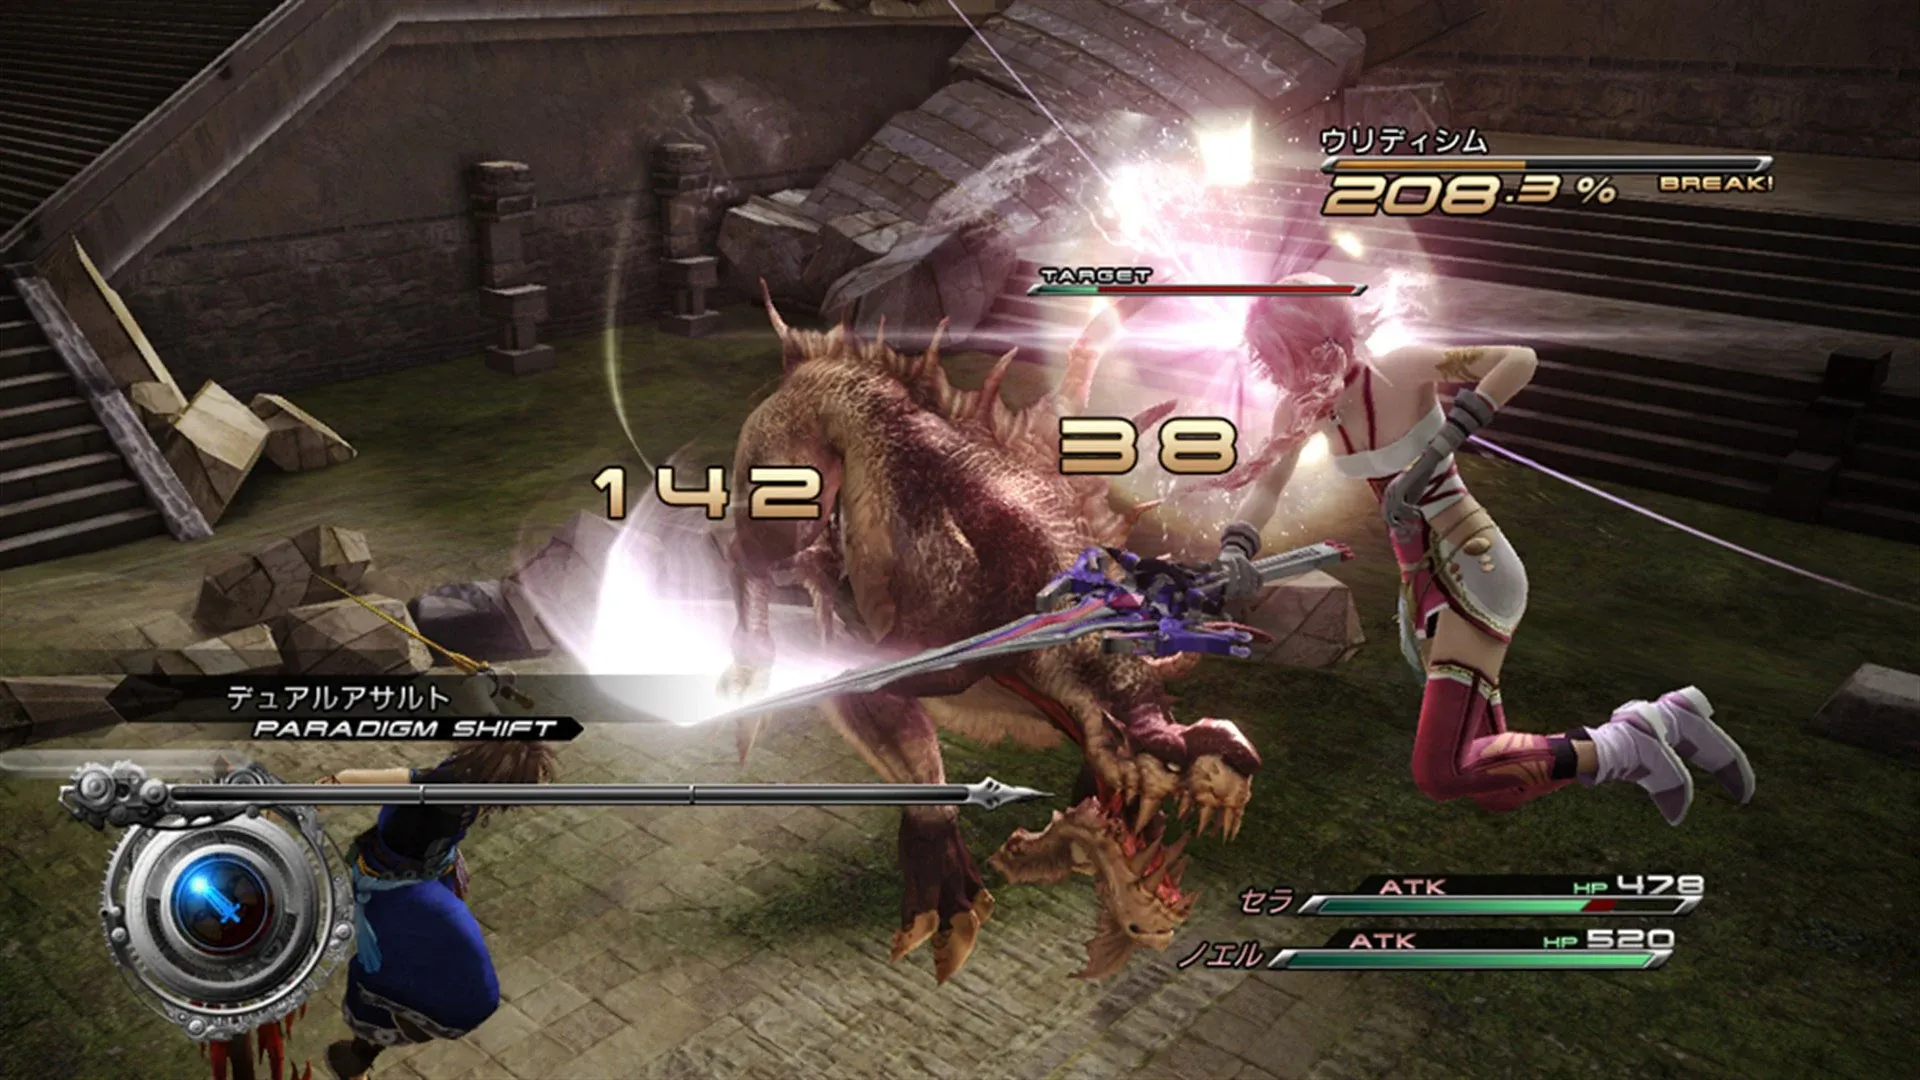 Imagem do jogo Final Fantasy XIII-2 com a personagem Serah atacando monstros em meio a uma batalha